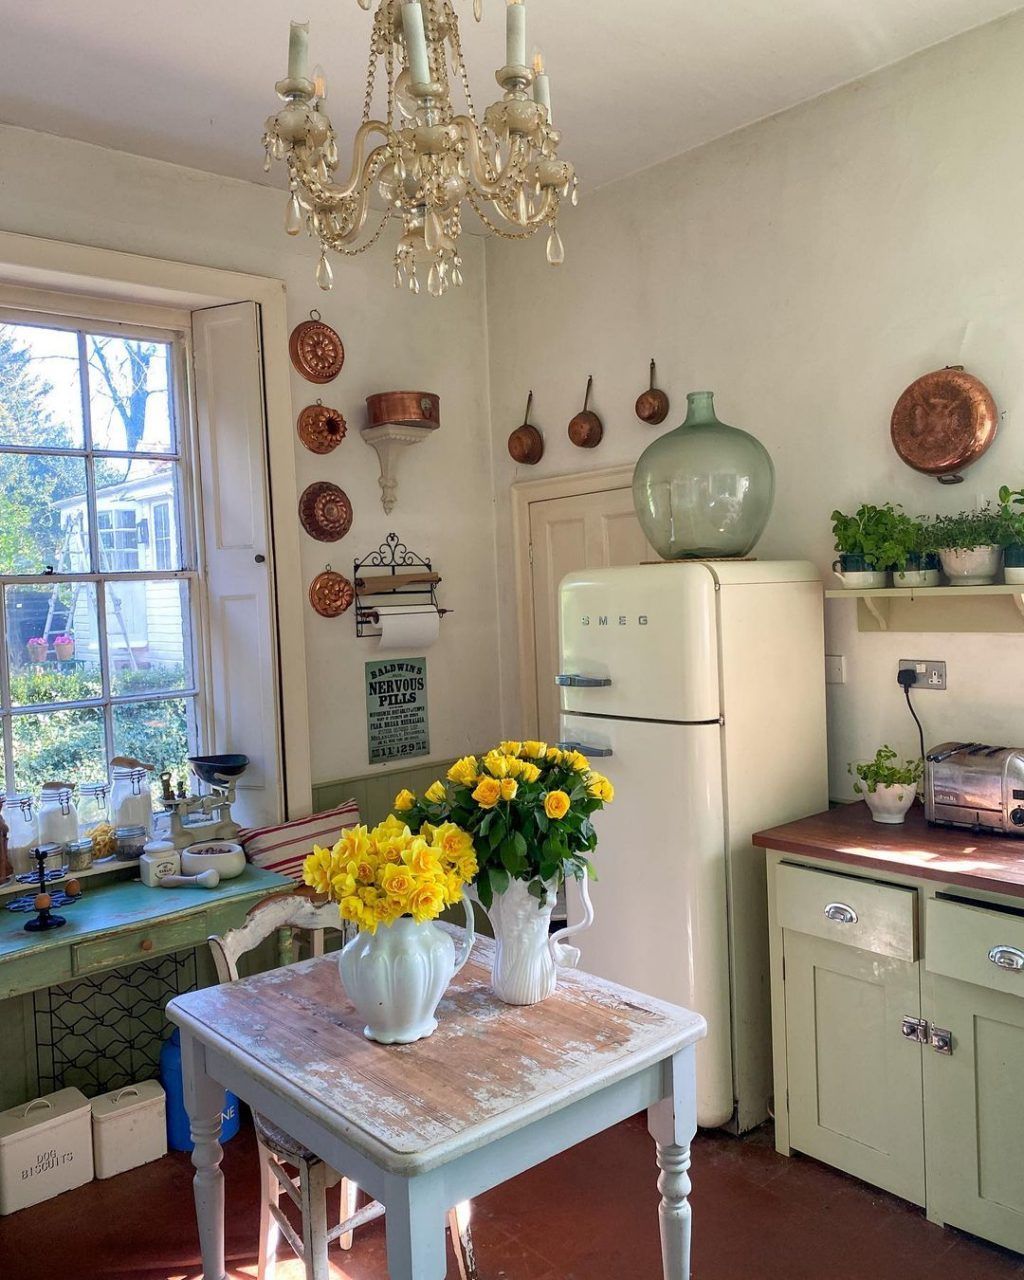 Trang trí phòng bếp nhỏ: Với những ý tưởng trang trí phòng bếp nhỏ độc đáo, bạn sẽ khiến không gian bếp trở nên hiện đại và tiện nghi hơn bao giờ hết. Hãy cùng khám phá những ý tưởng trang trí độc đáo cho ngôi nhà của bạn ngay nhé.